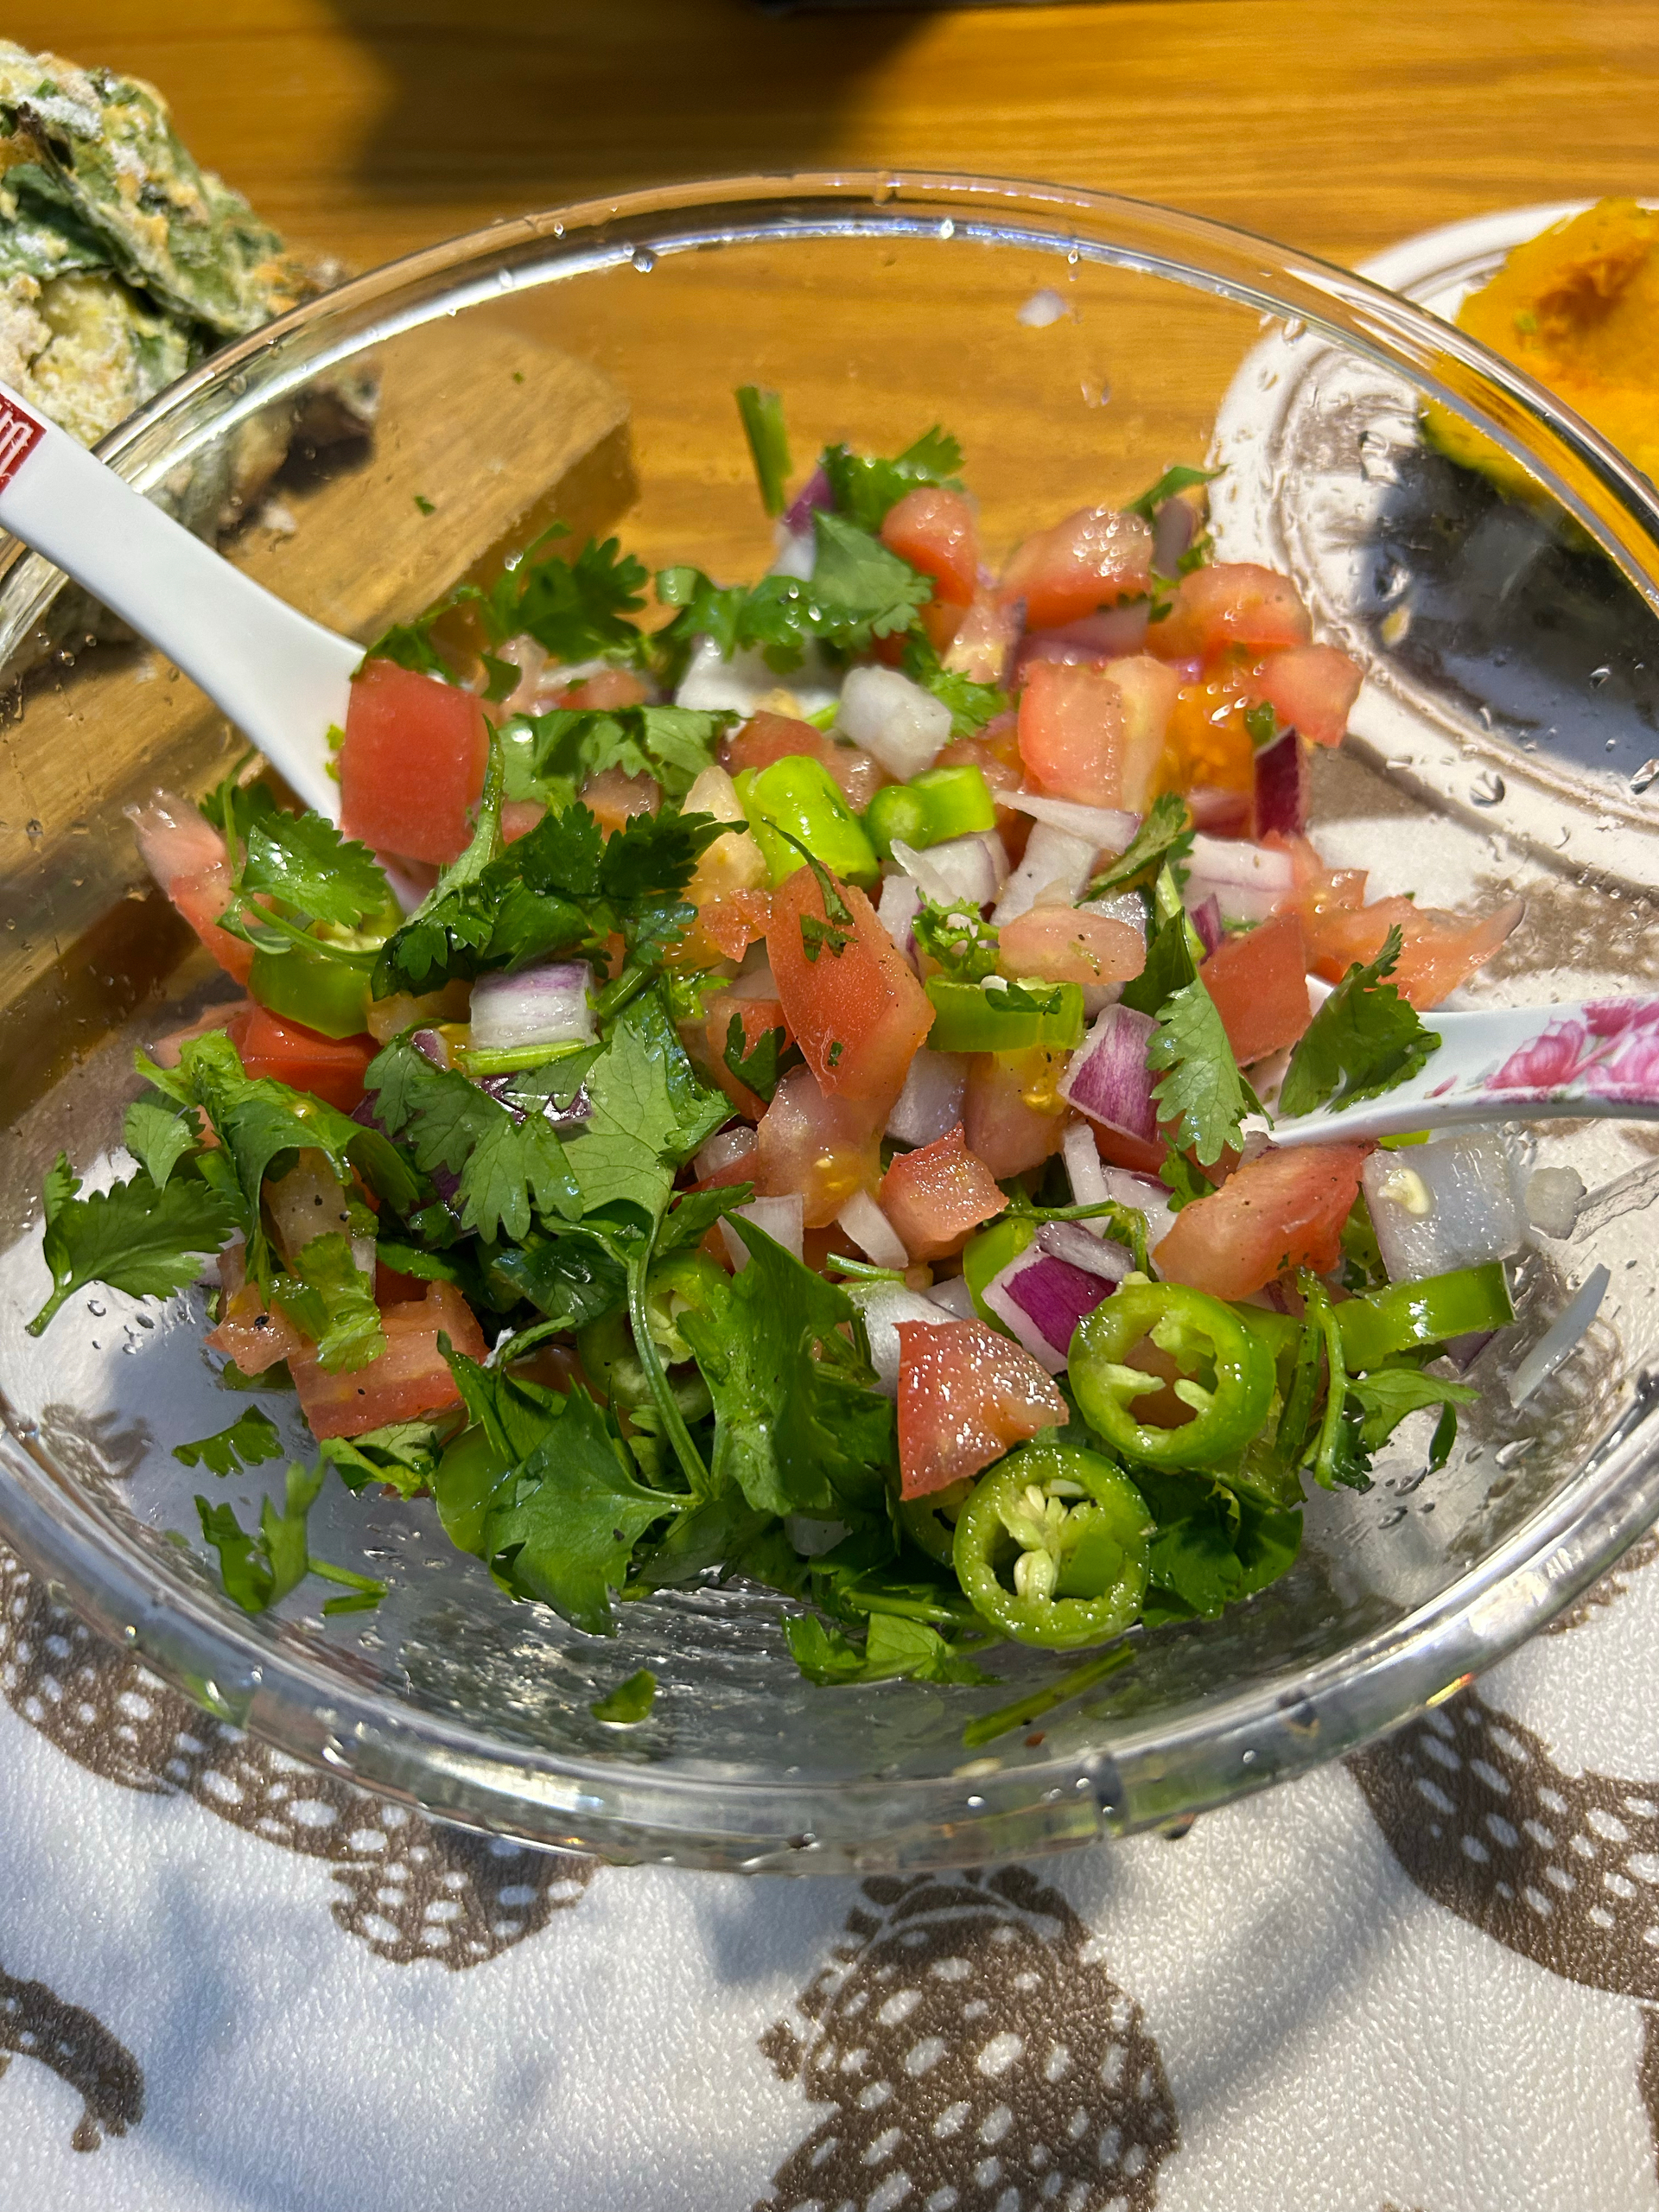 墨西哥经典莎莎酱（salsa）